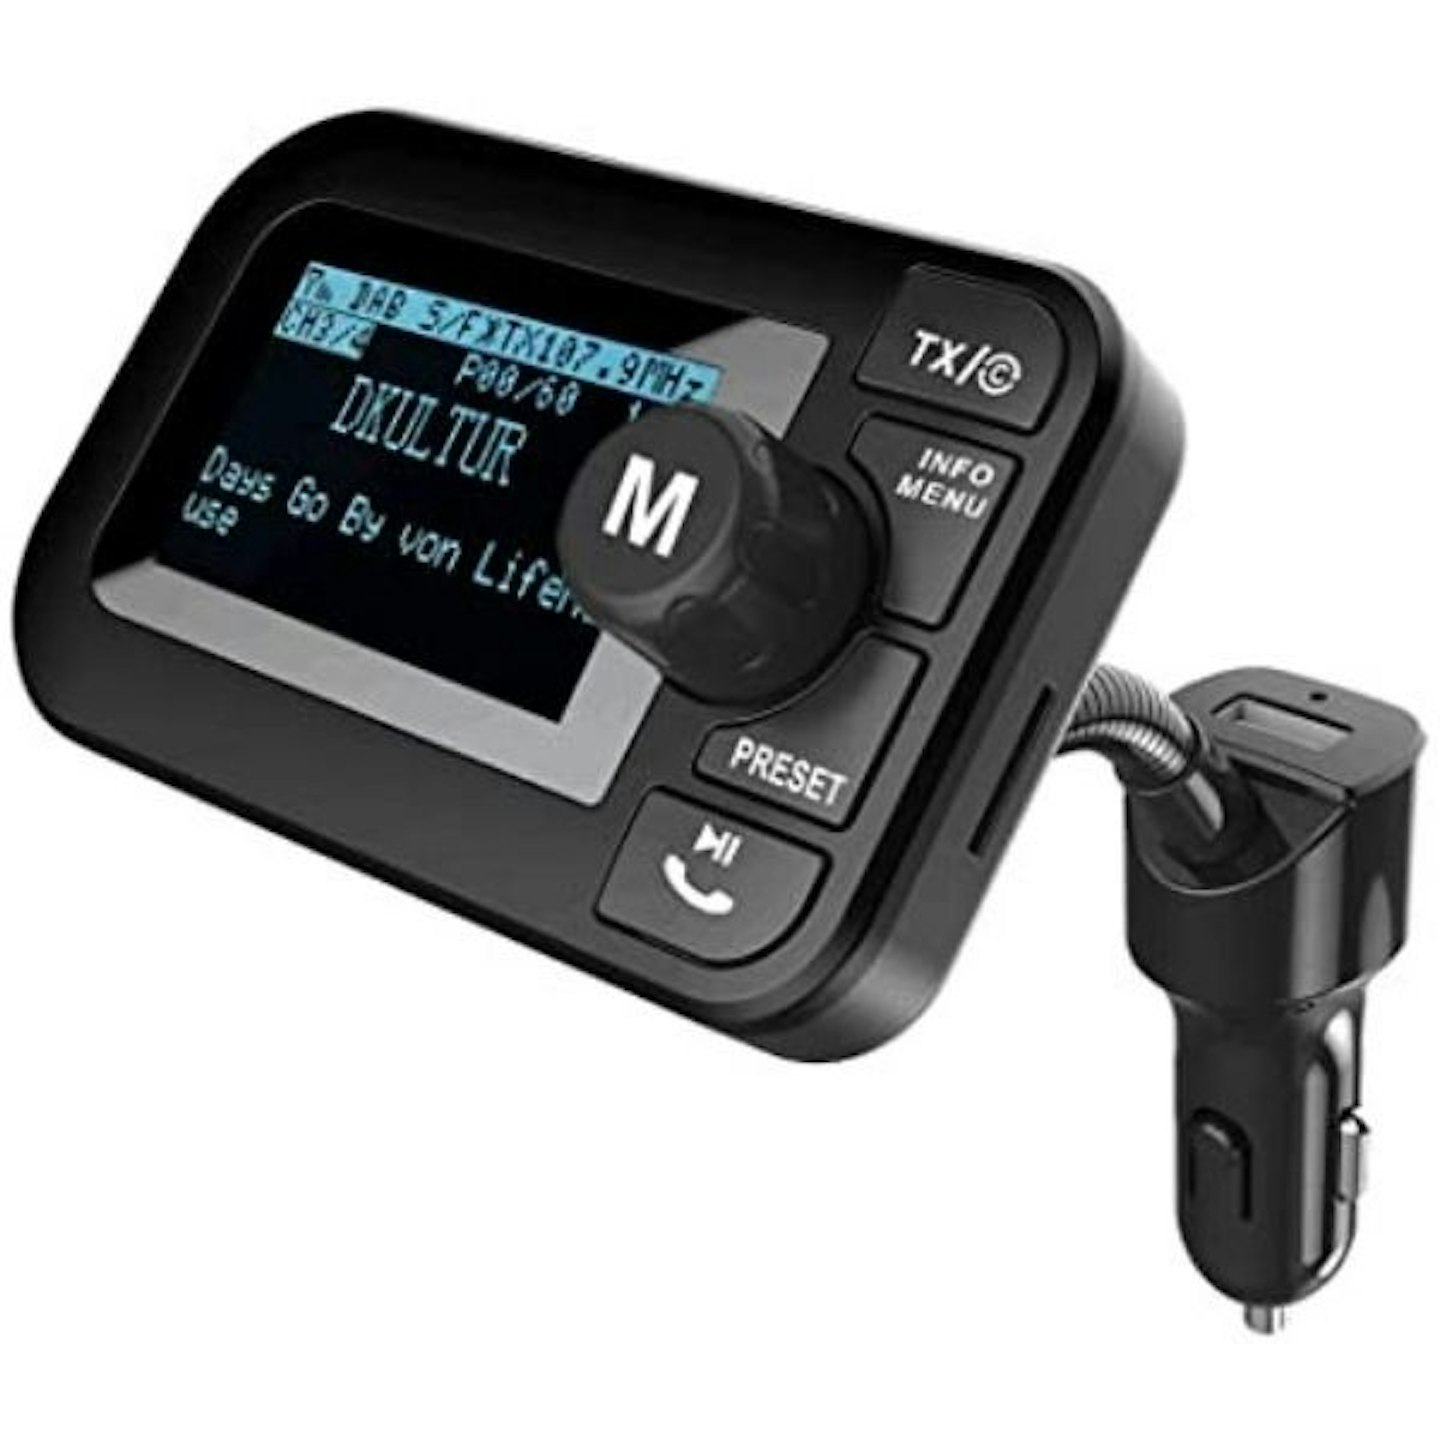 FirstE Car DAB/DAB+ Radio Portable Bluetooth FM Transmitter